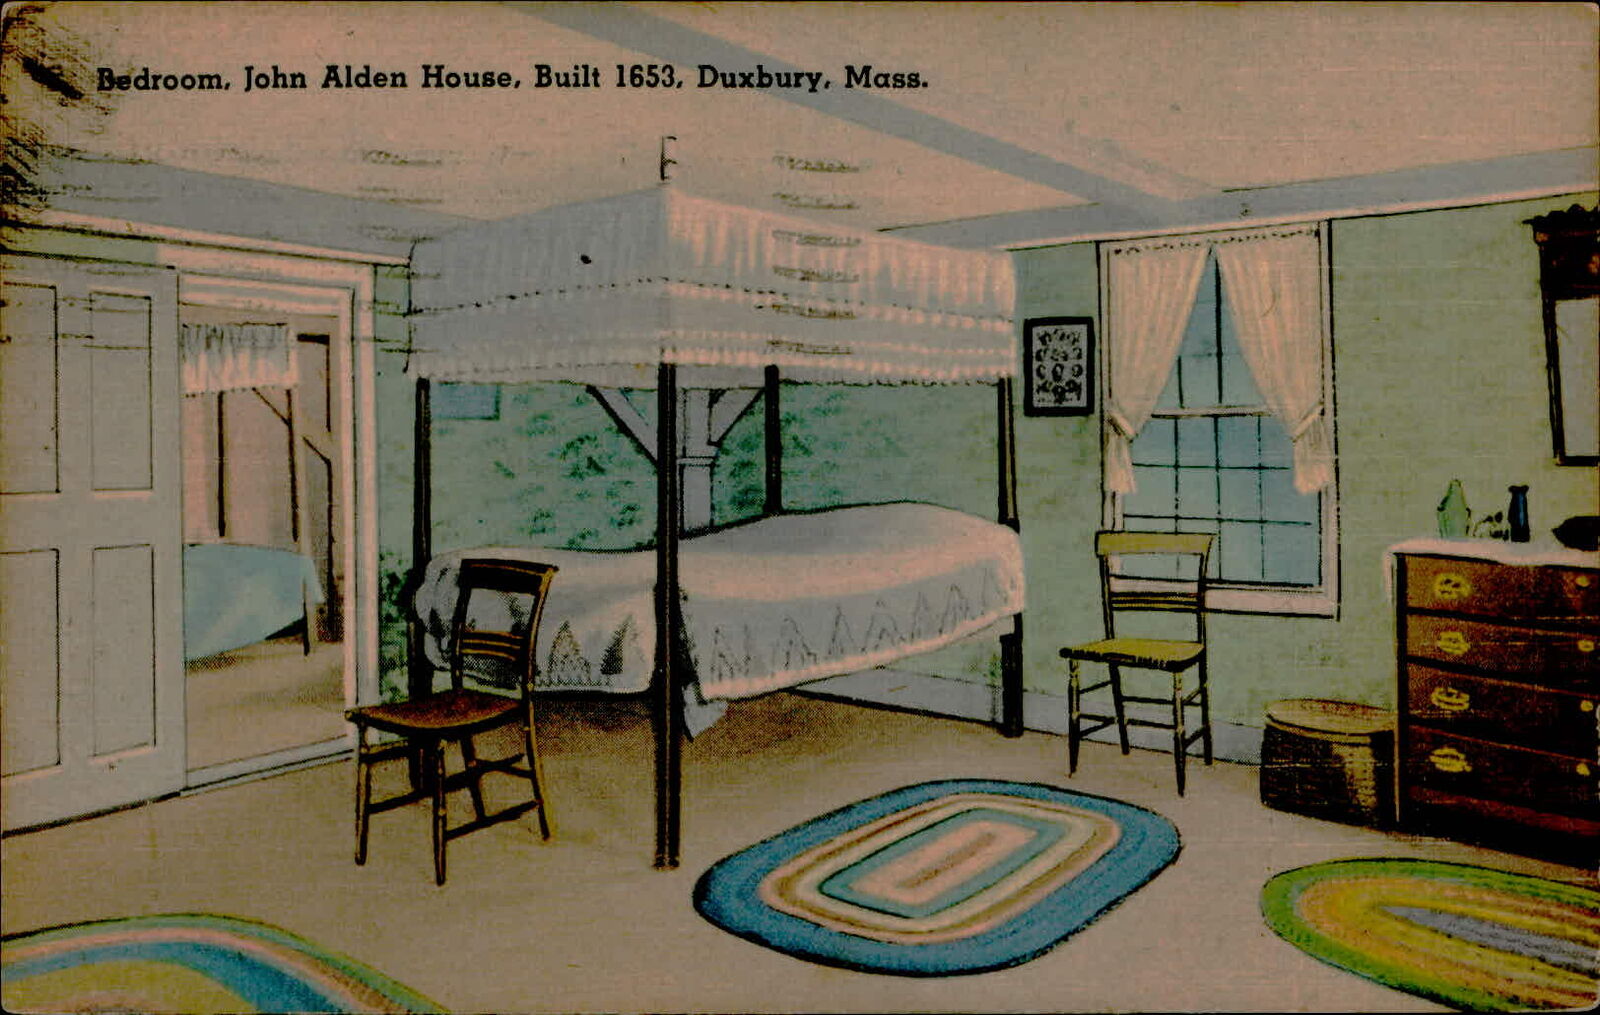 Postcard: Bedroom, John Alden House, Built 1653, Duxbury, Mass. F 4334